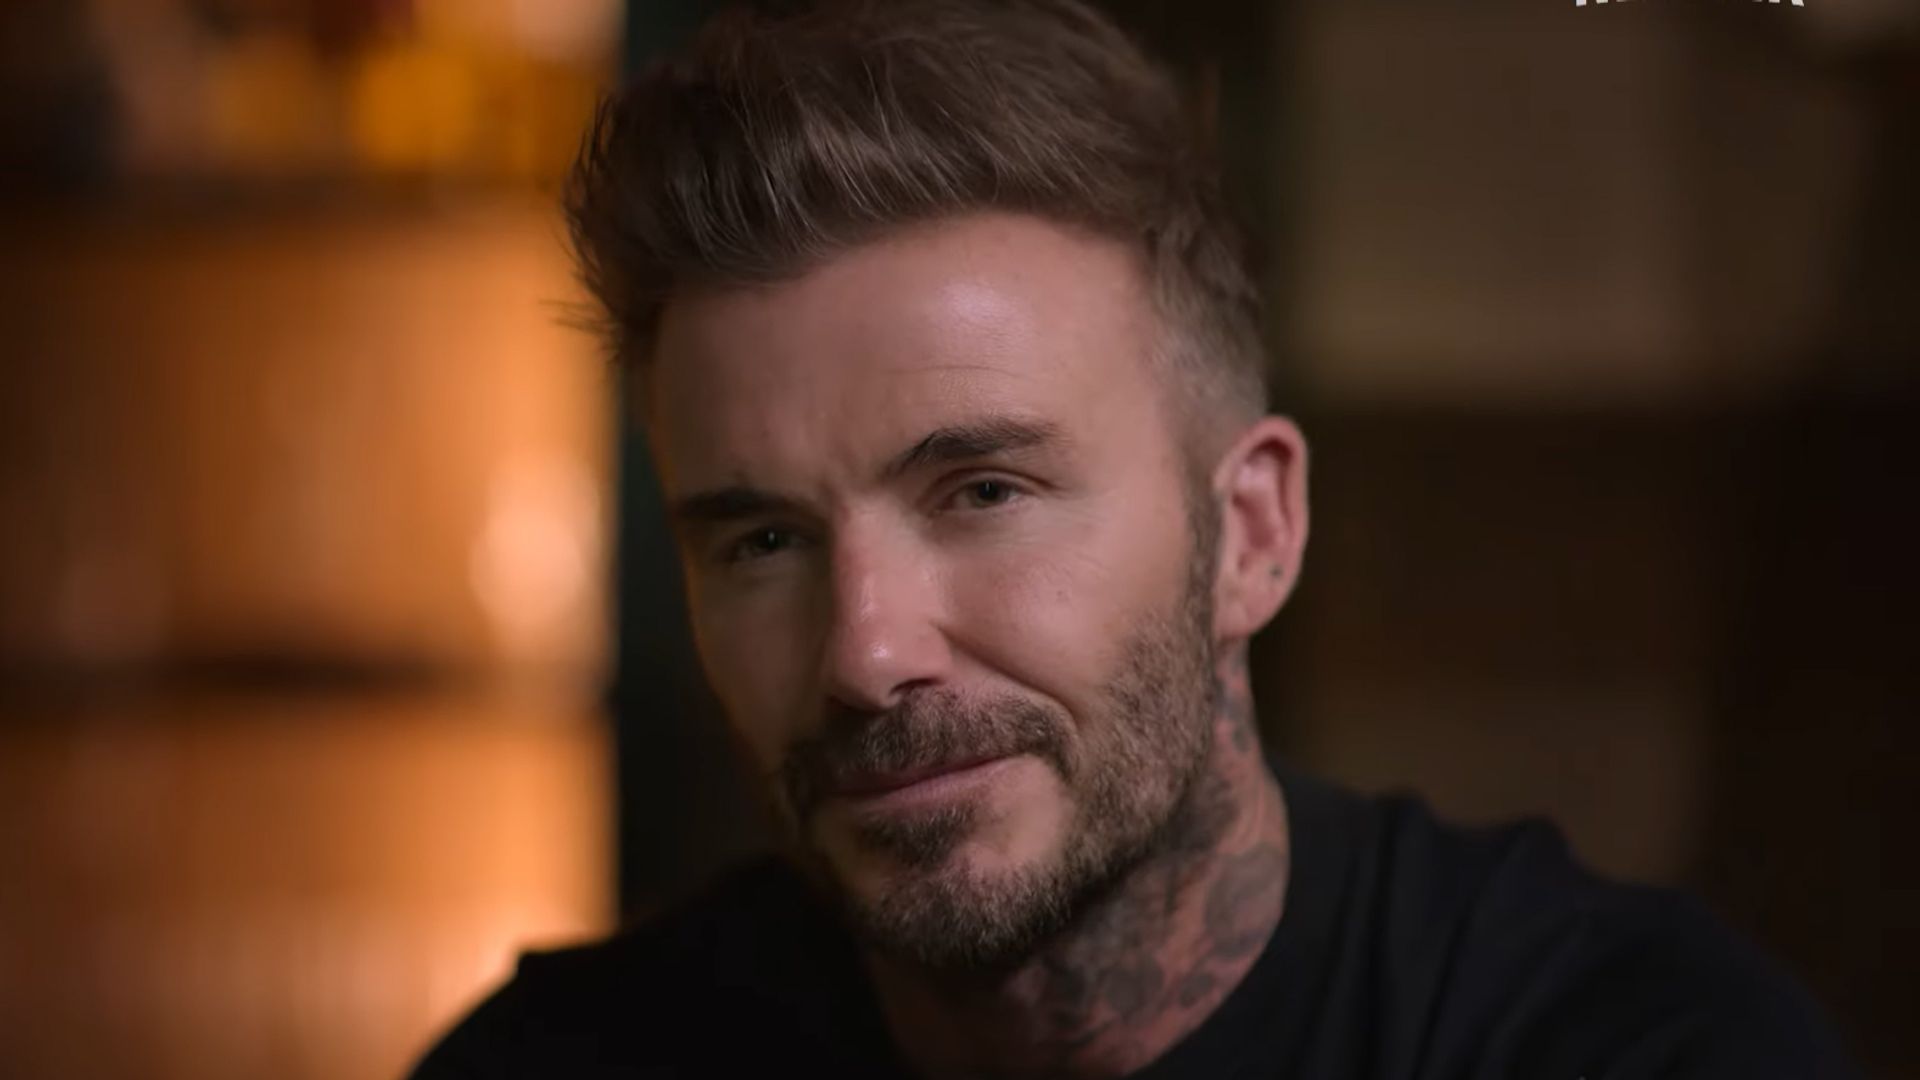 David Beckham looking emotional